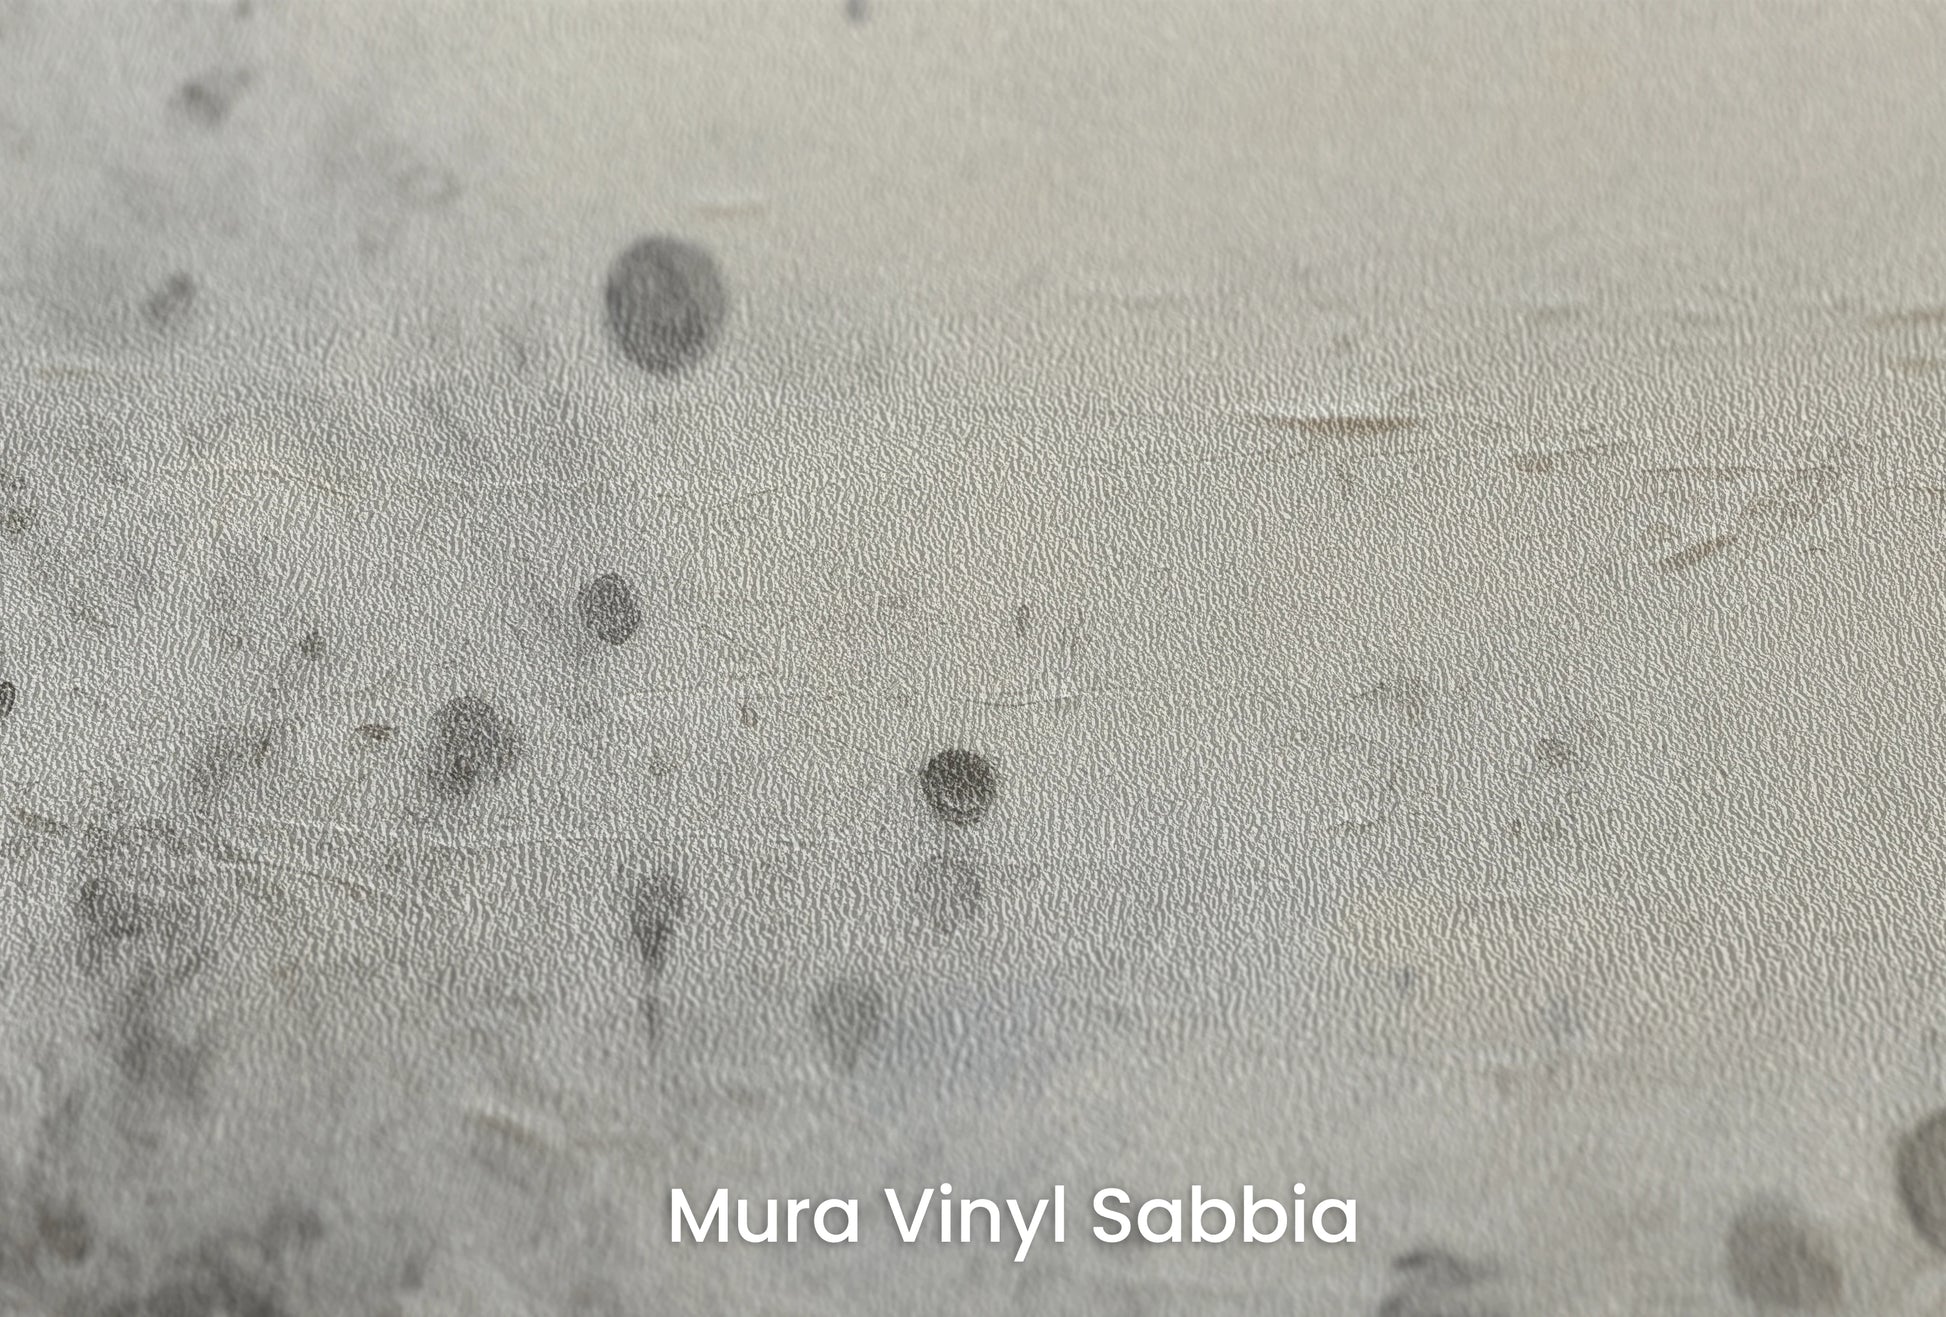 Zbliżenie na artystyczną fototapetę o nazwie Uranian Chill na podłożu Mura Vinyl Sabbia struktura grubego ziarna piasku.